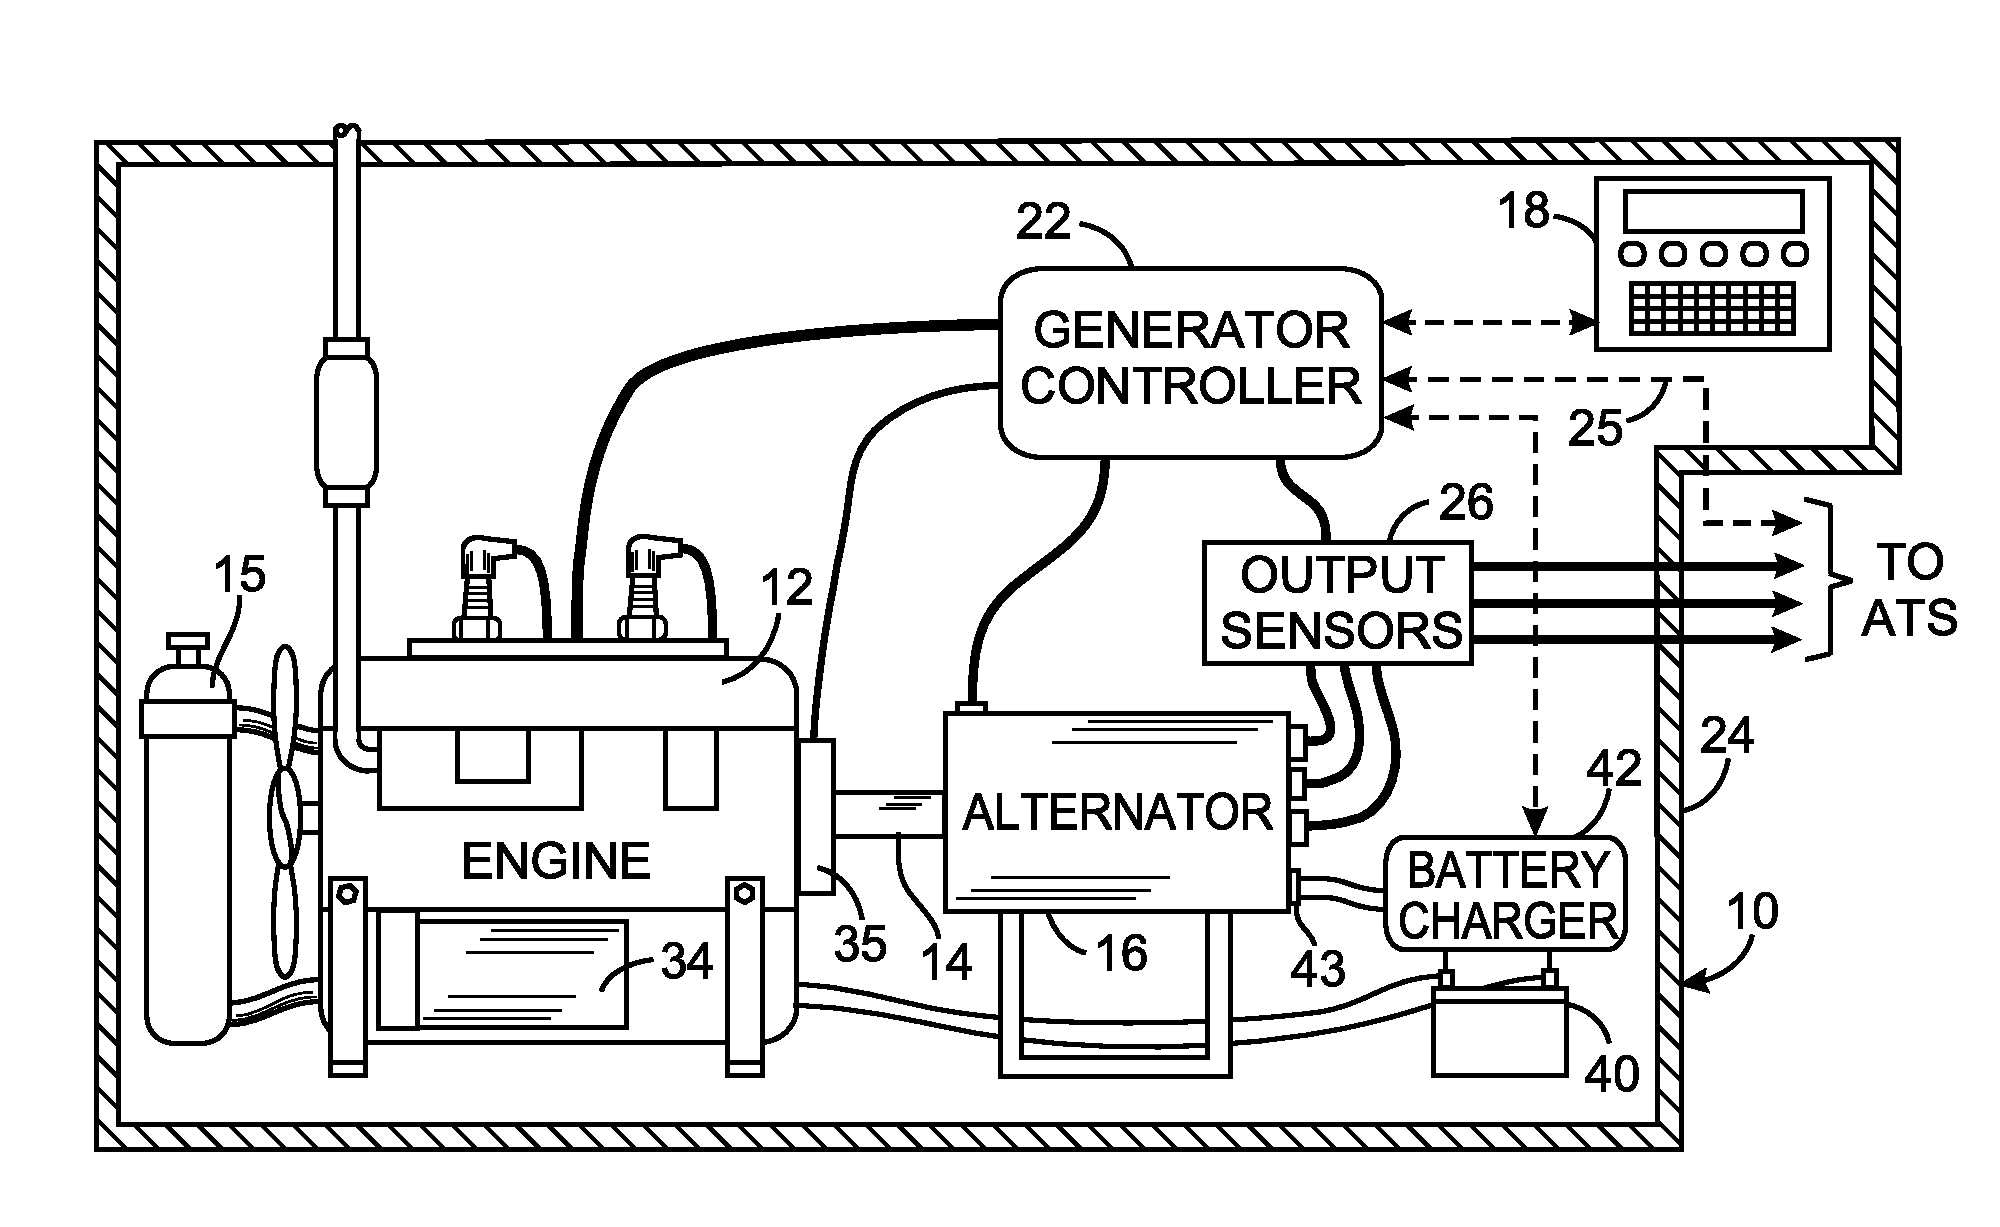 Diagnostic method for an engine-generator set